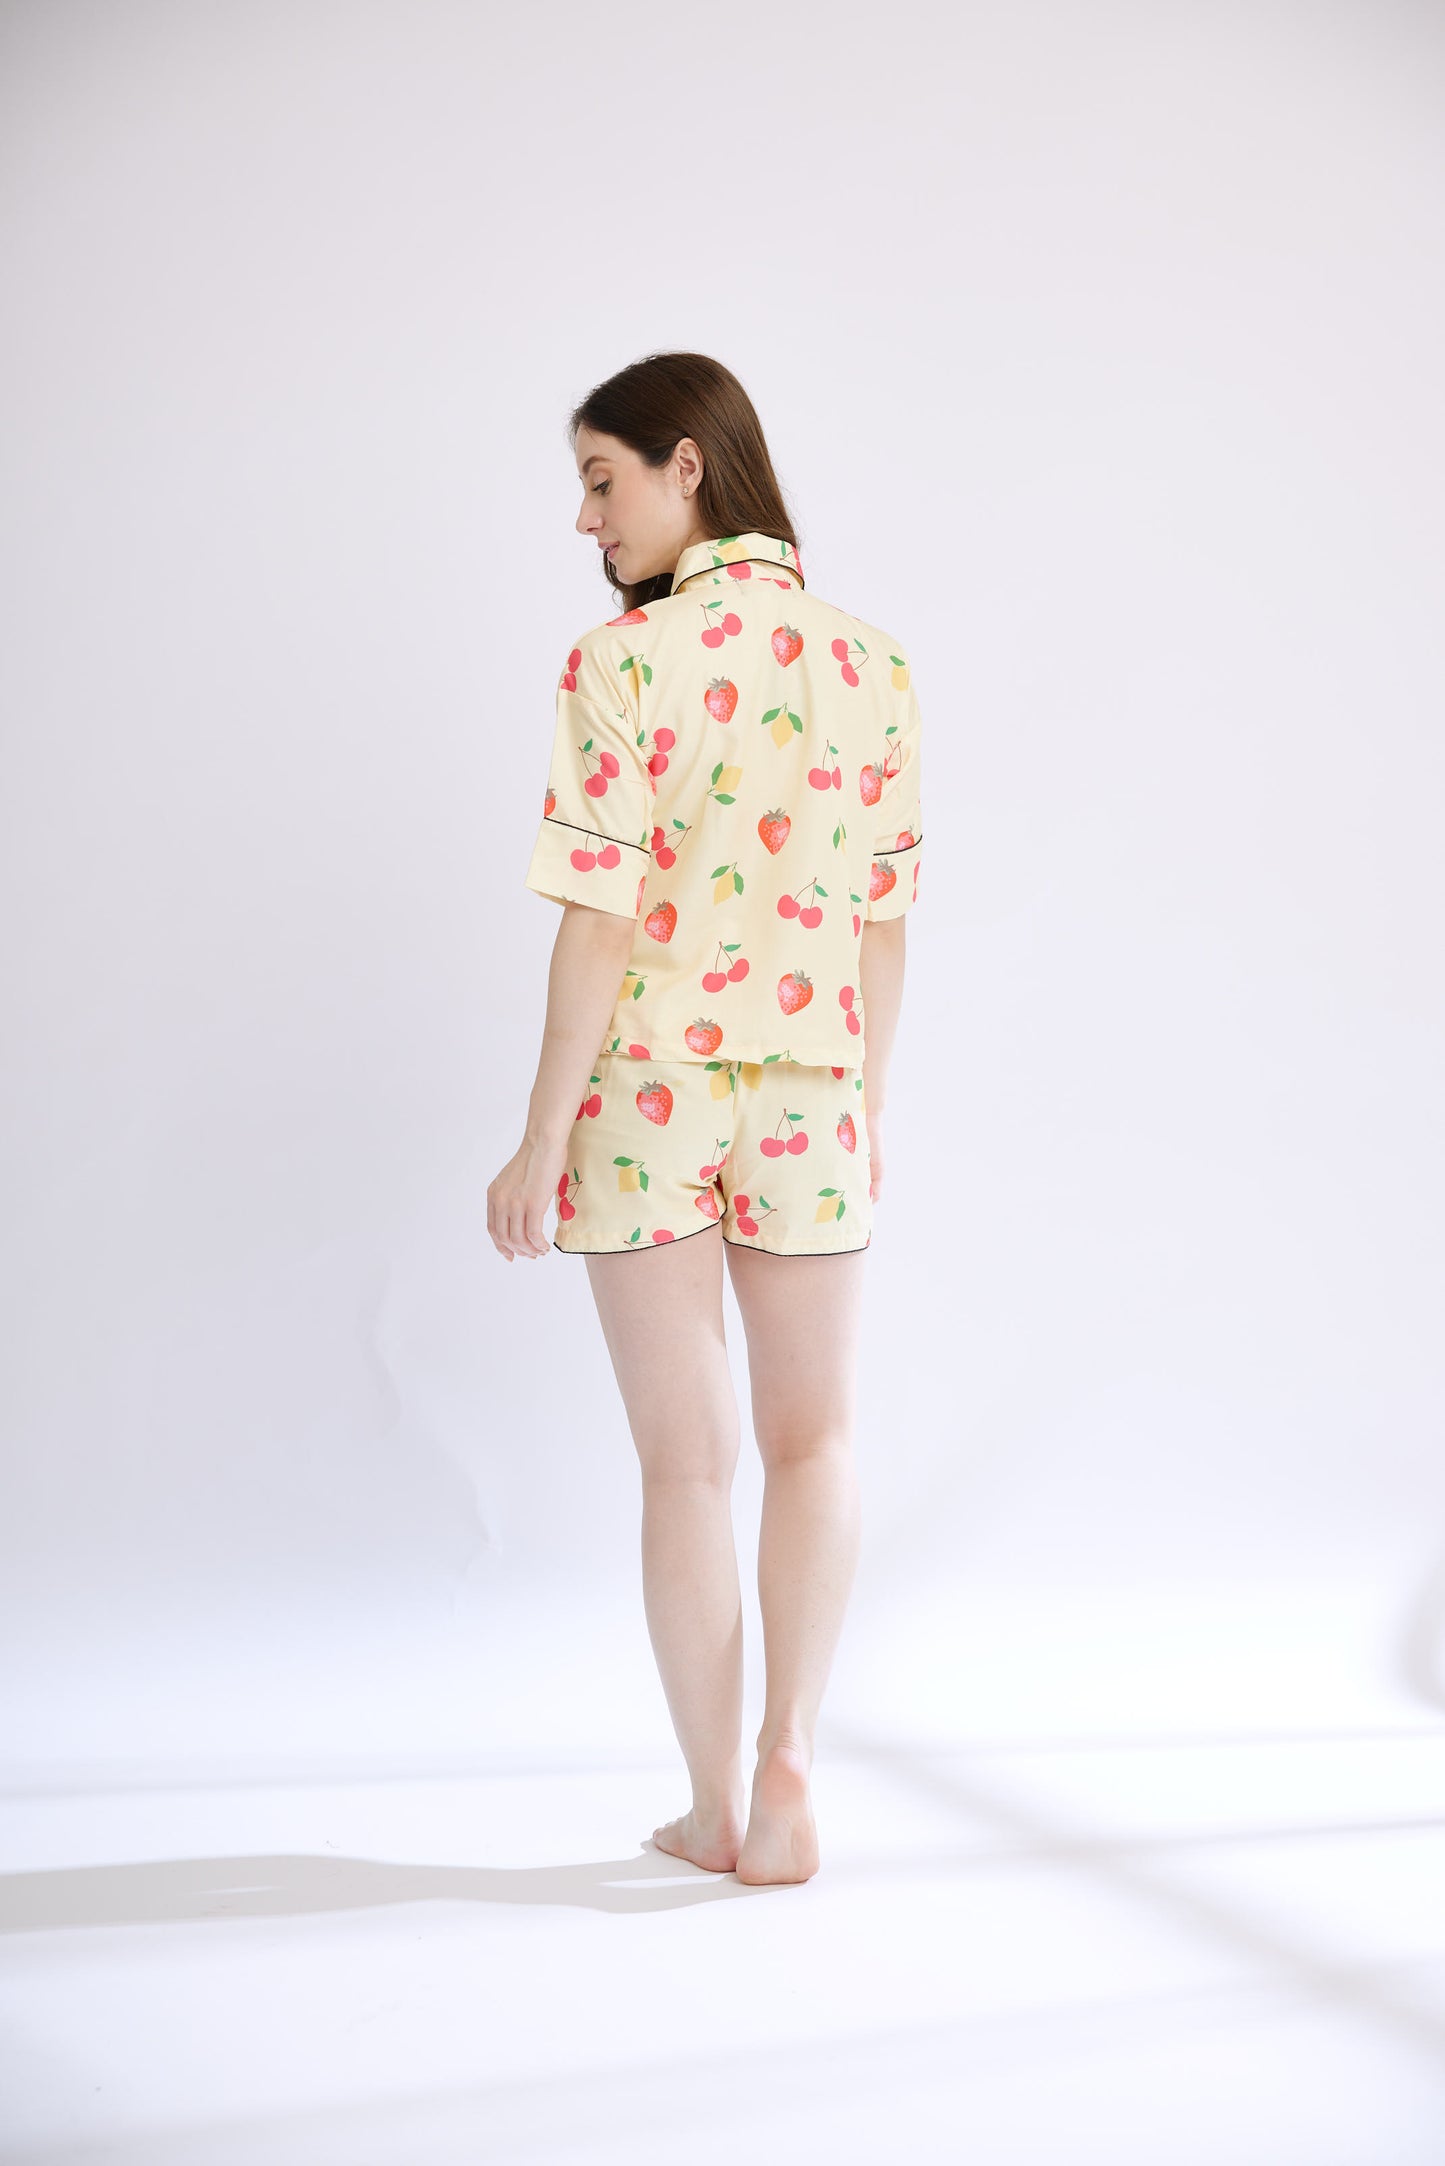 Fruity Kiss Luxe Shorts Nightwear (Women) LIMITED EDITION